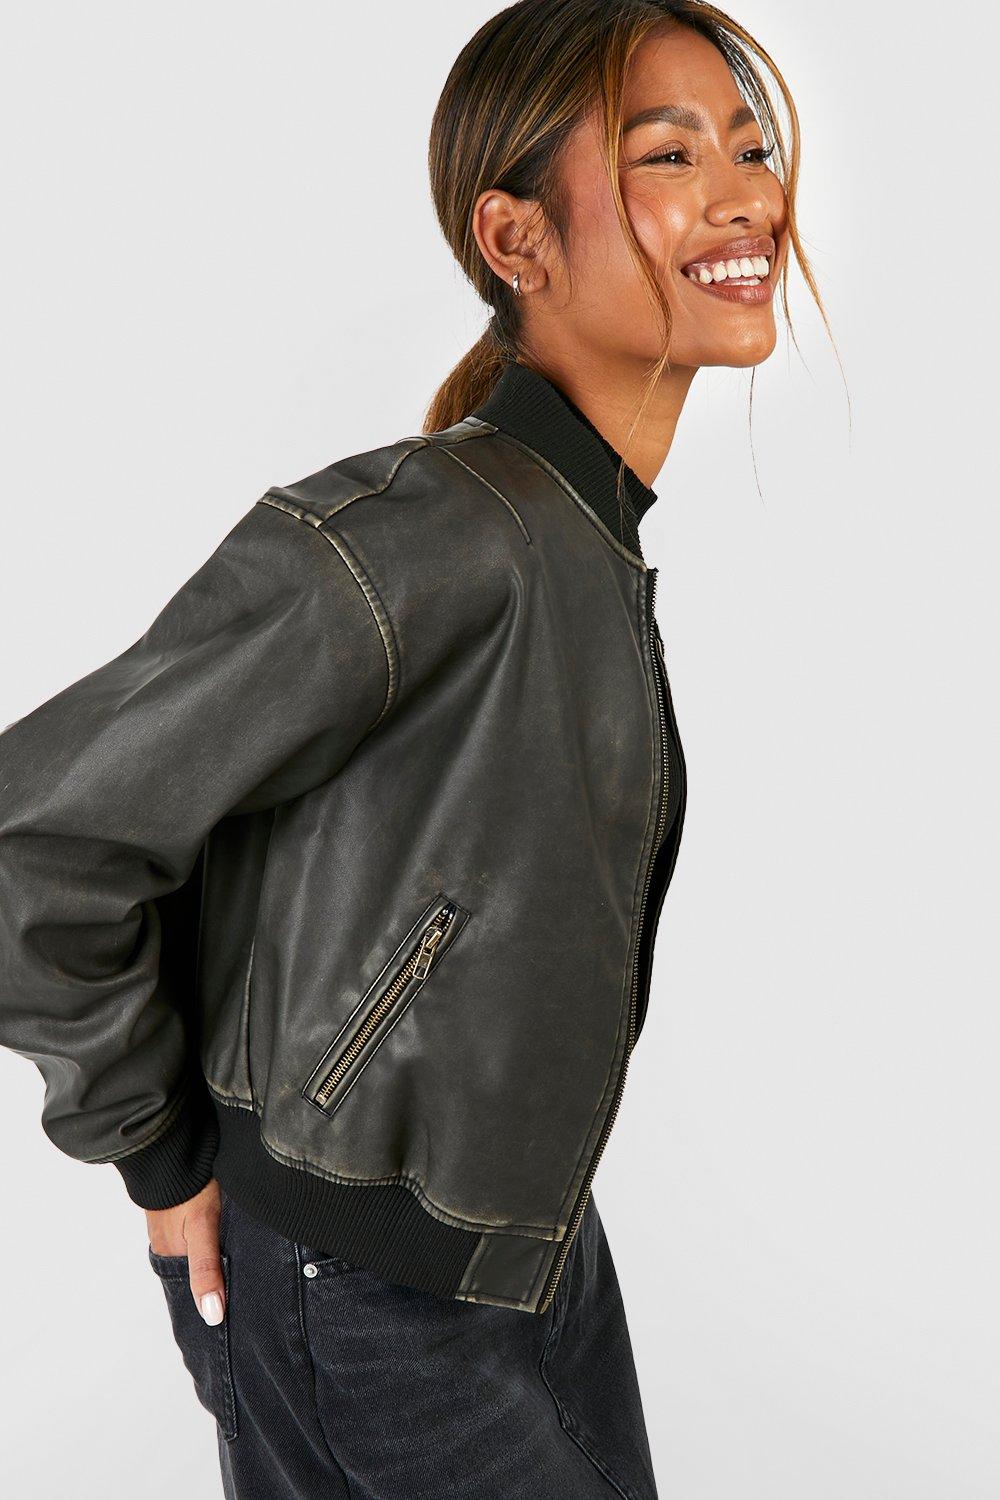 https://media.boohoo.com/i/boohoo/gzz56386_grey_xl_4/female-grey-vintage-look-faux-leather-oversized-cropped-bomber-jacket